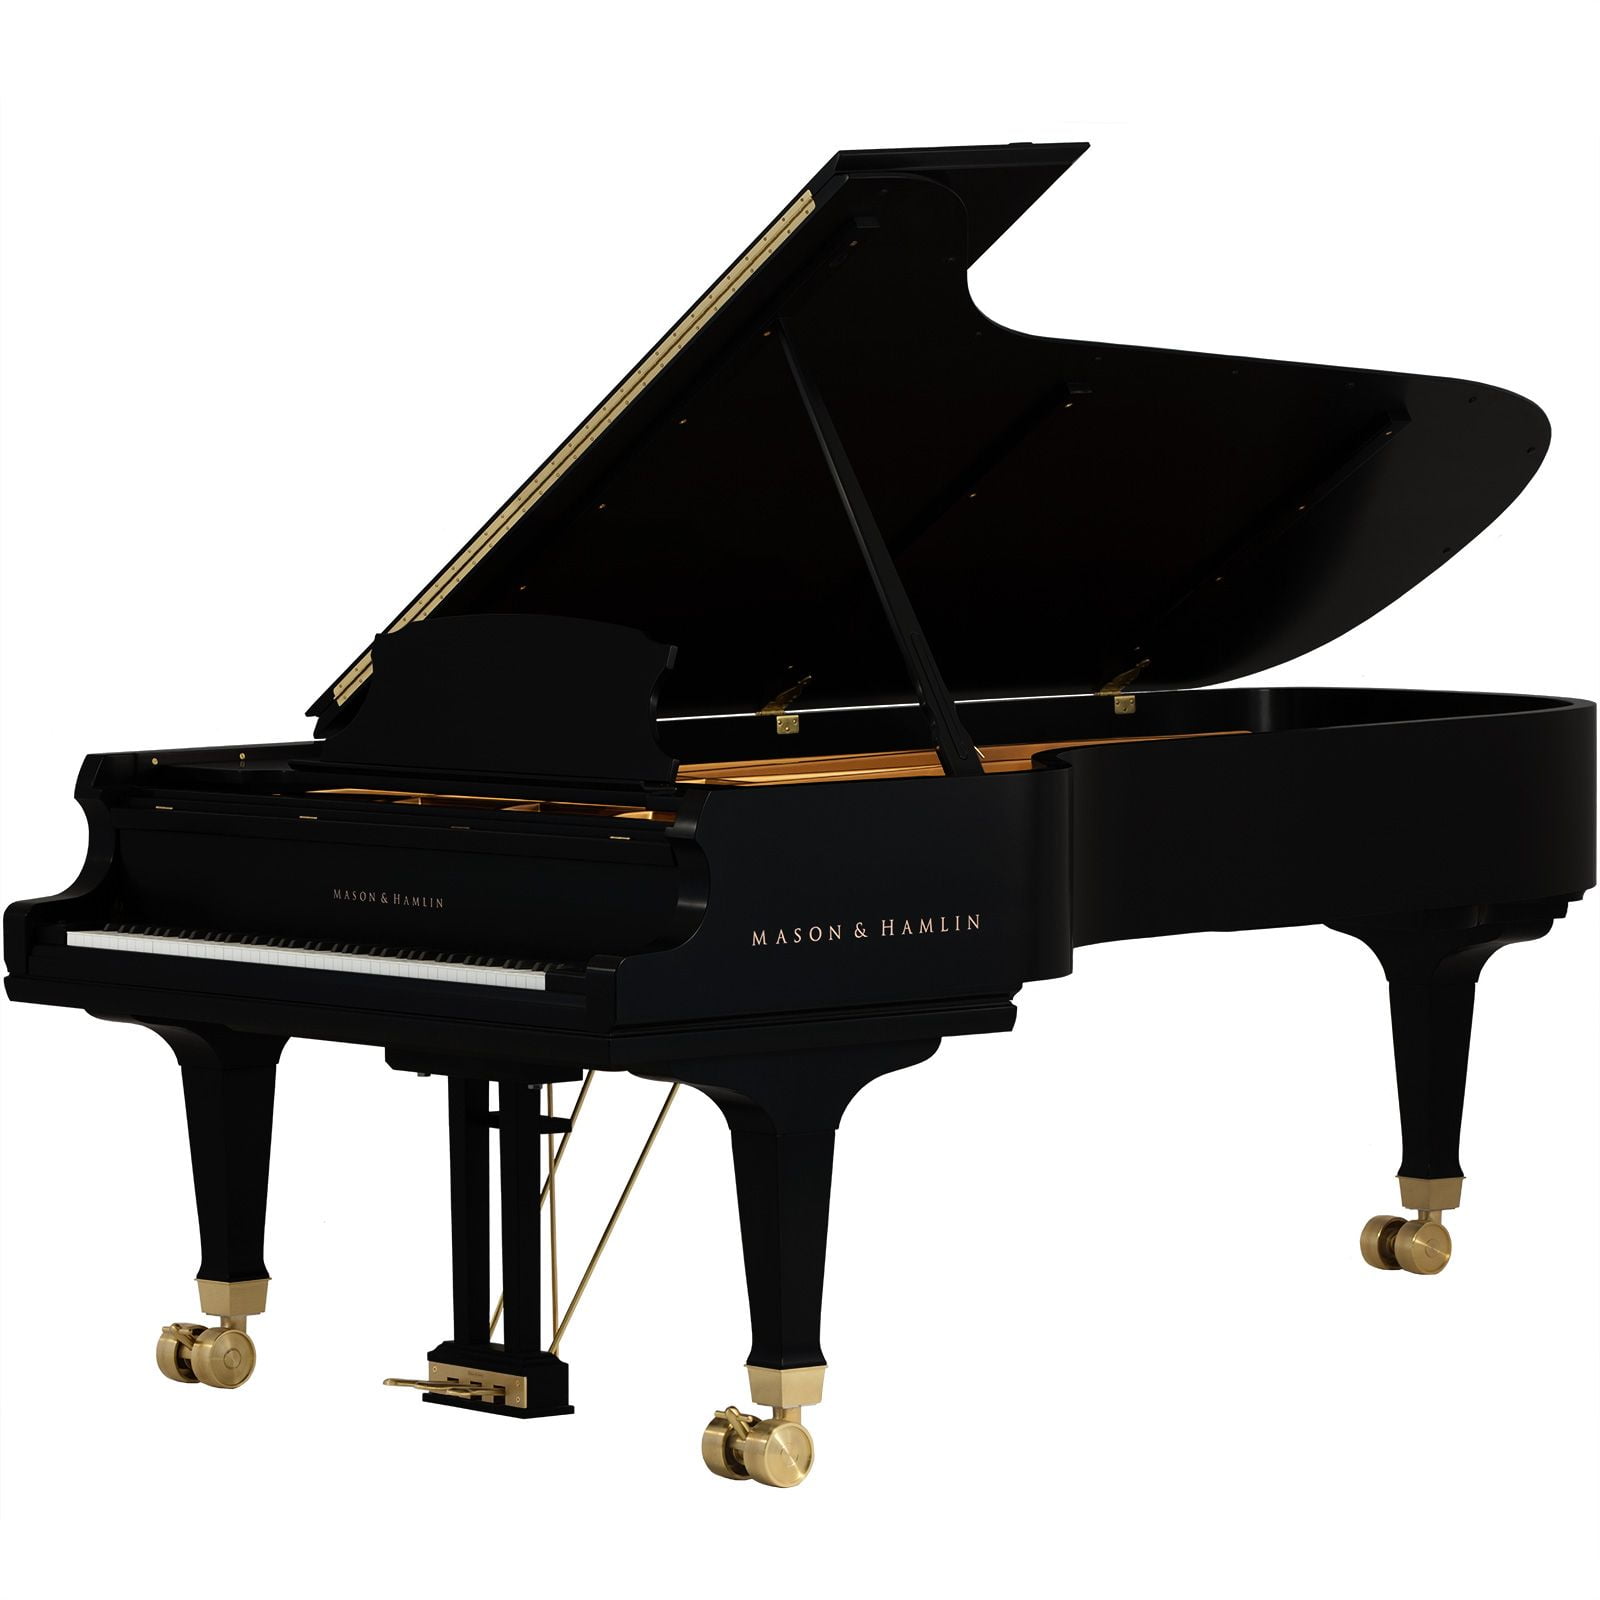 CC 94 Ebony Satin opt • Mason & Hamlin Piano Company • Made in the USA